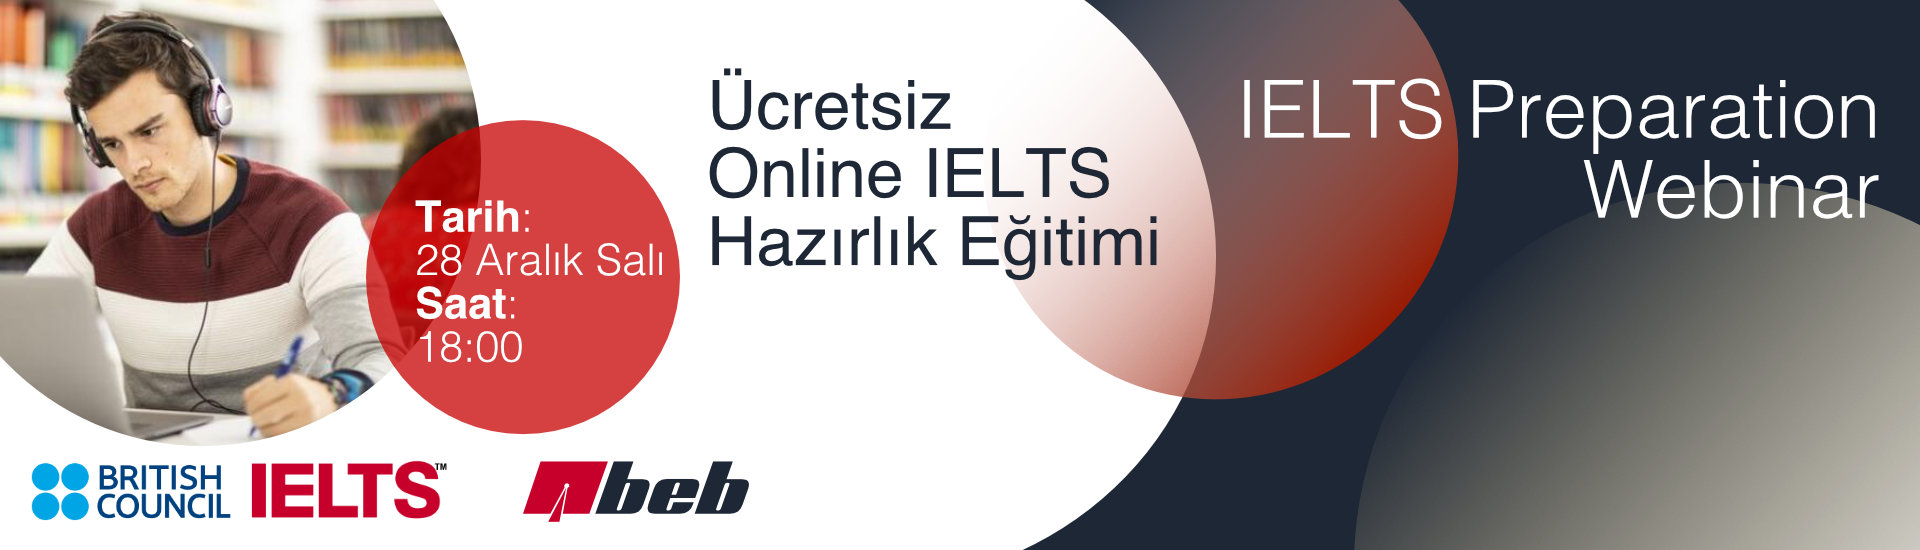 Ucretsiz-Online-IELTS-Hazirlik-Egitimi